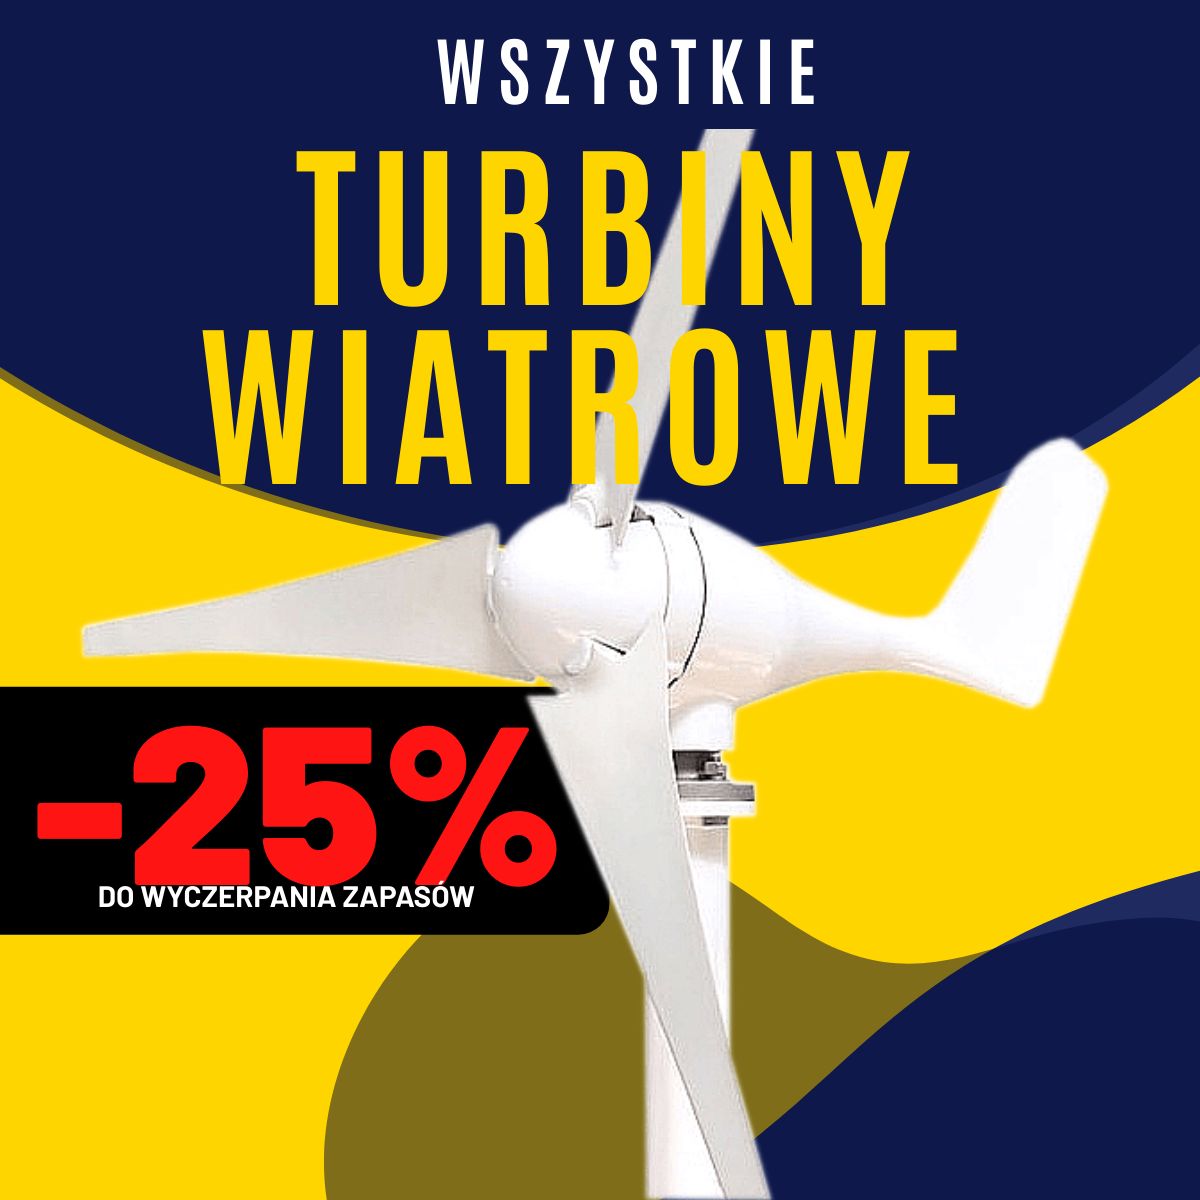 WSZYSTKIE turbiny wiatrowe -25%